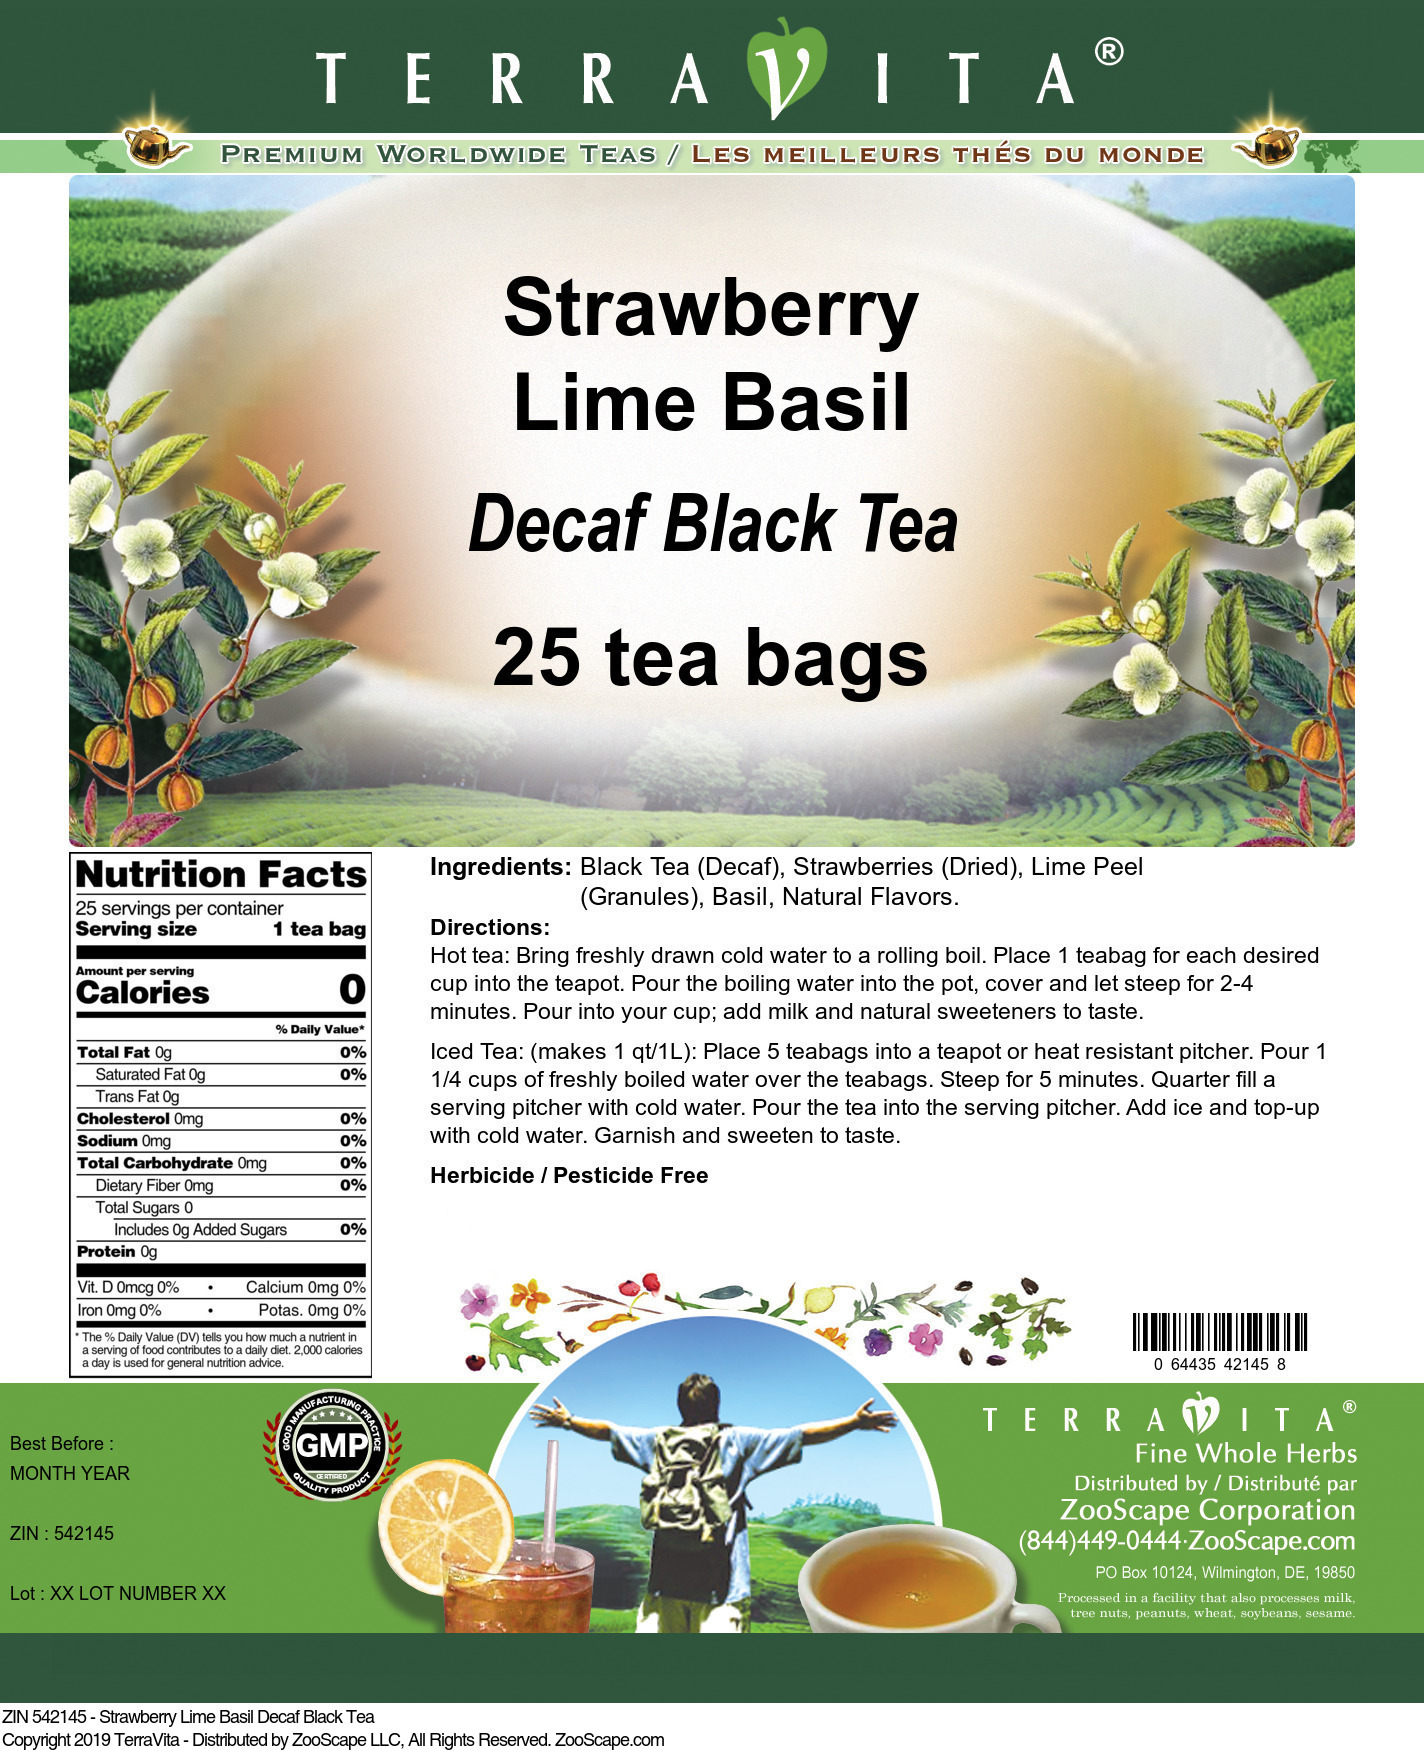 Strawberry Lime Basil Decaf Black Tea - Label